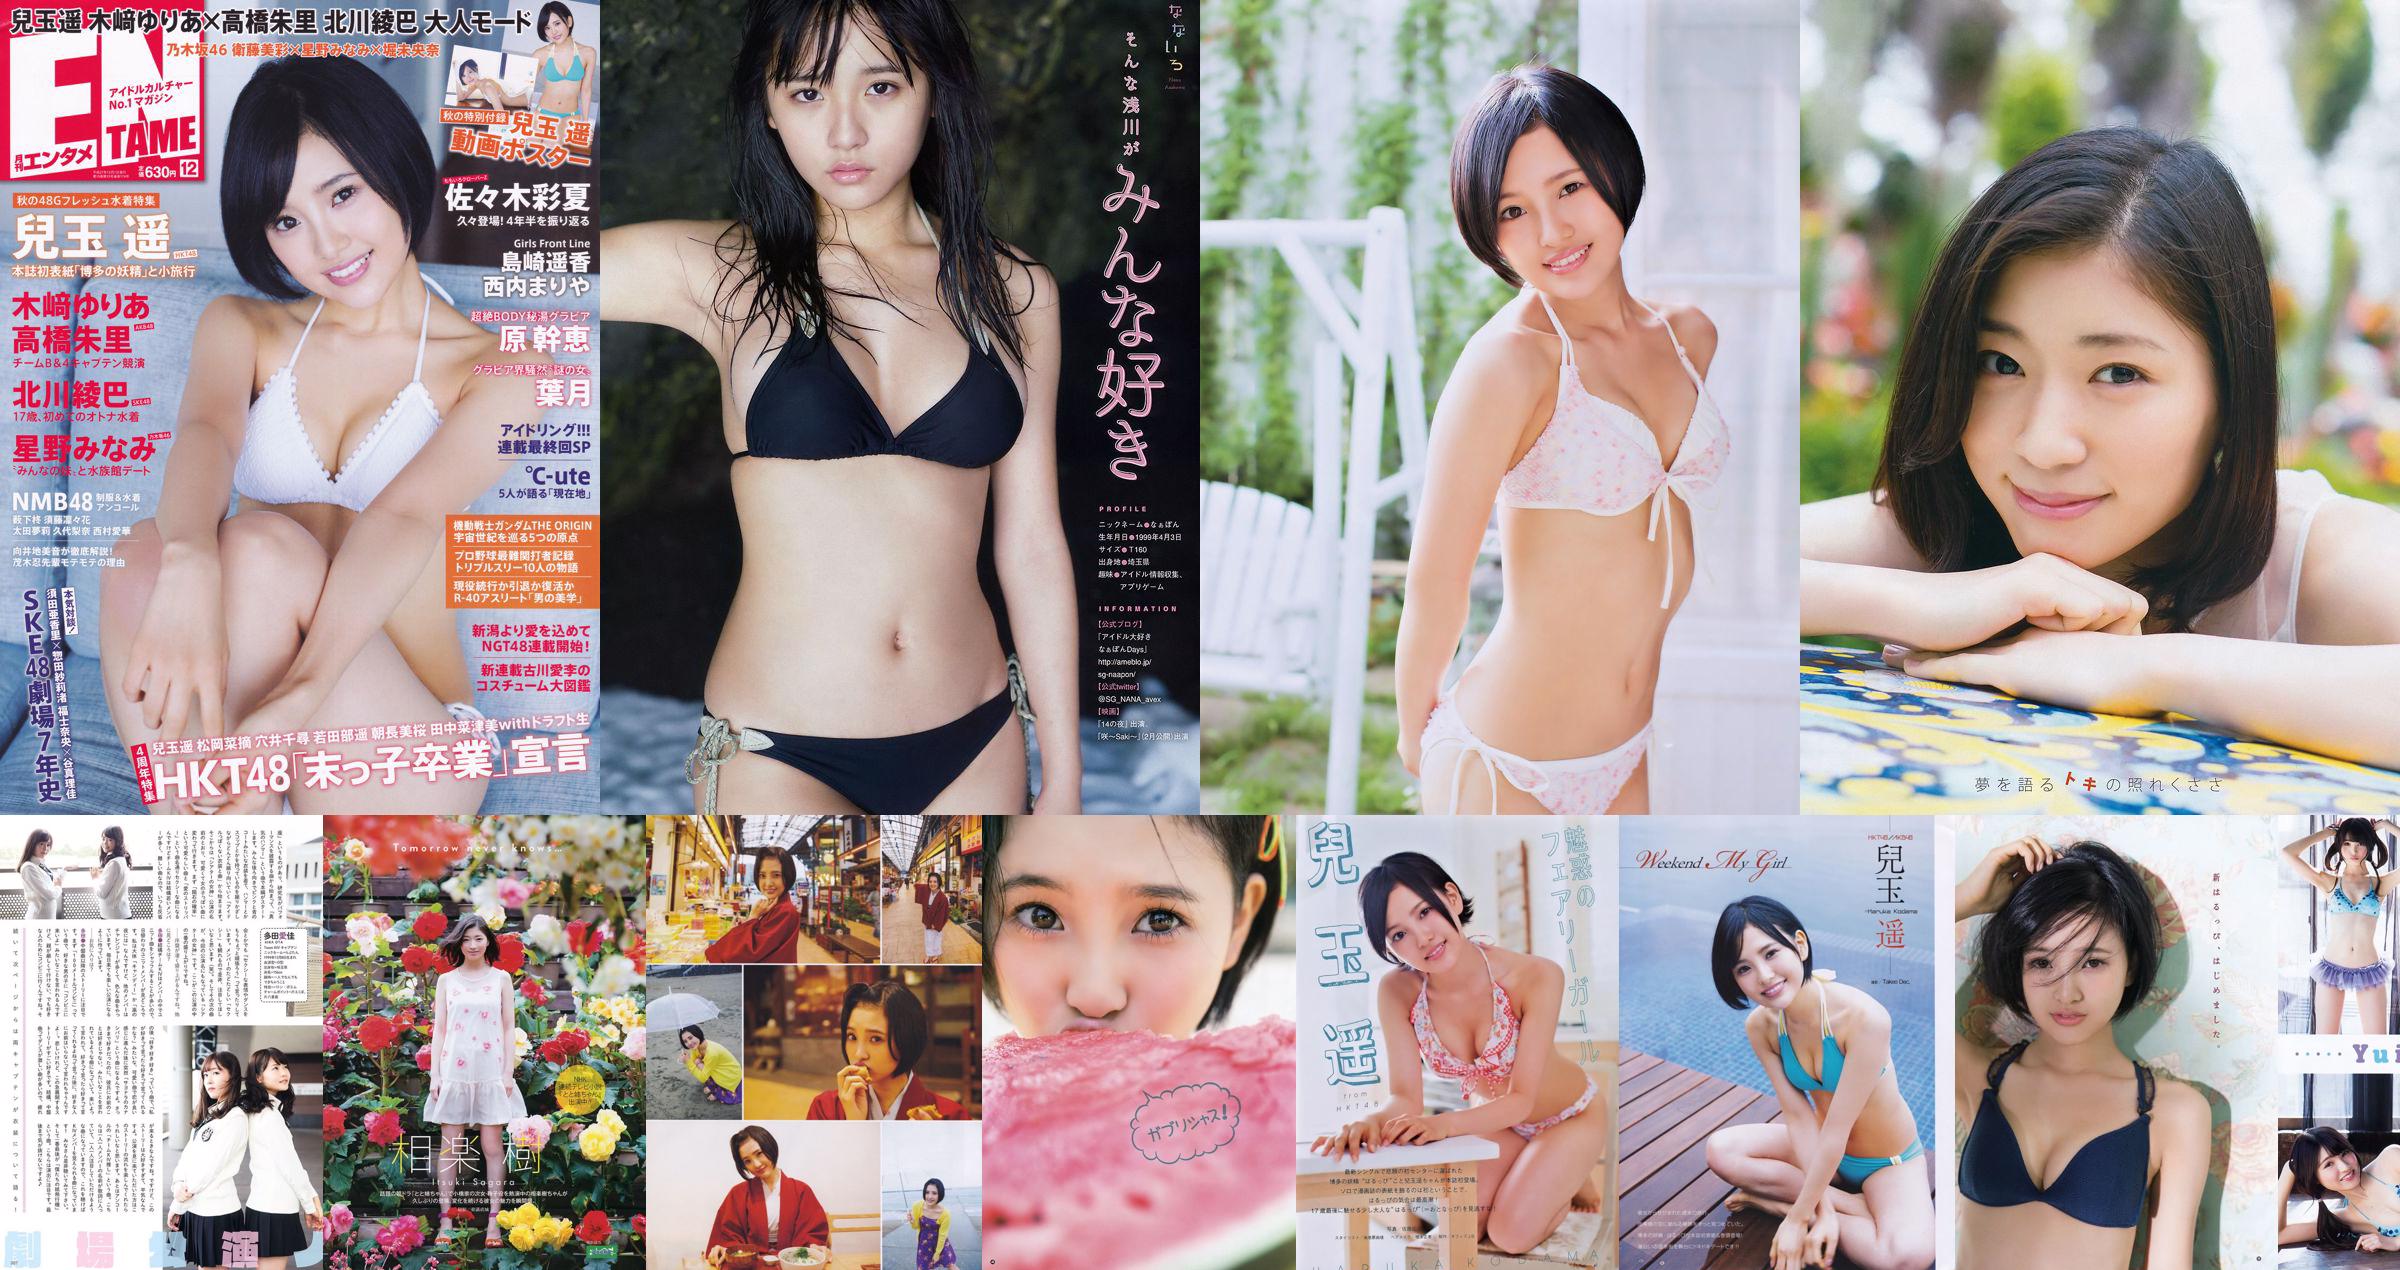 [Young Gangan] Haruka Kodama Itsuki Sagara 2016 No.11 Photo Magazine No.de61a1 Página 2